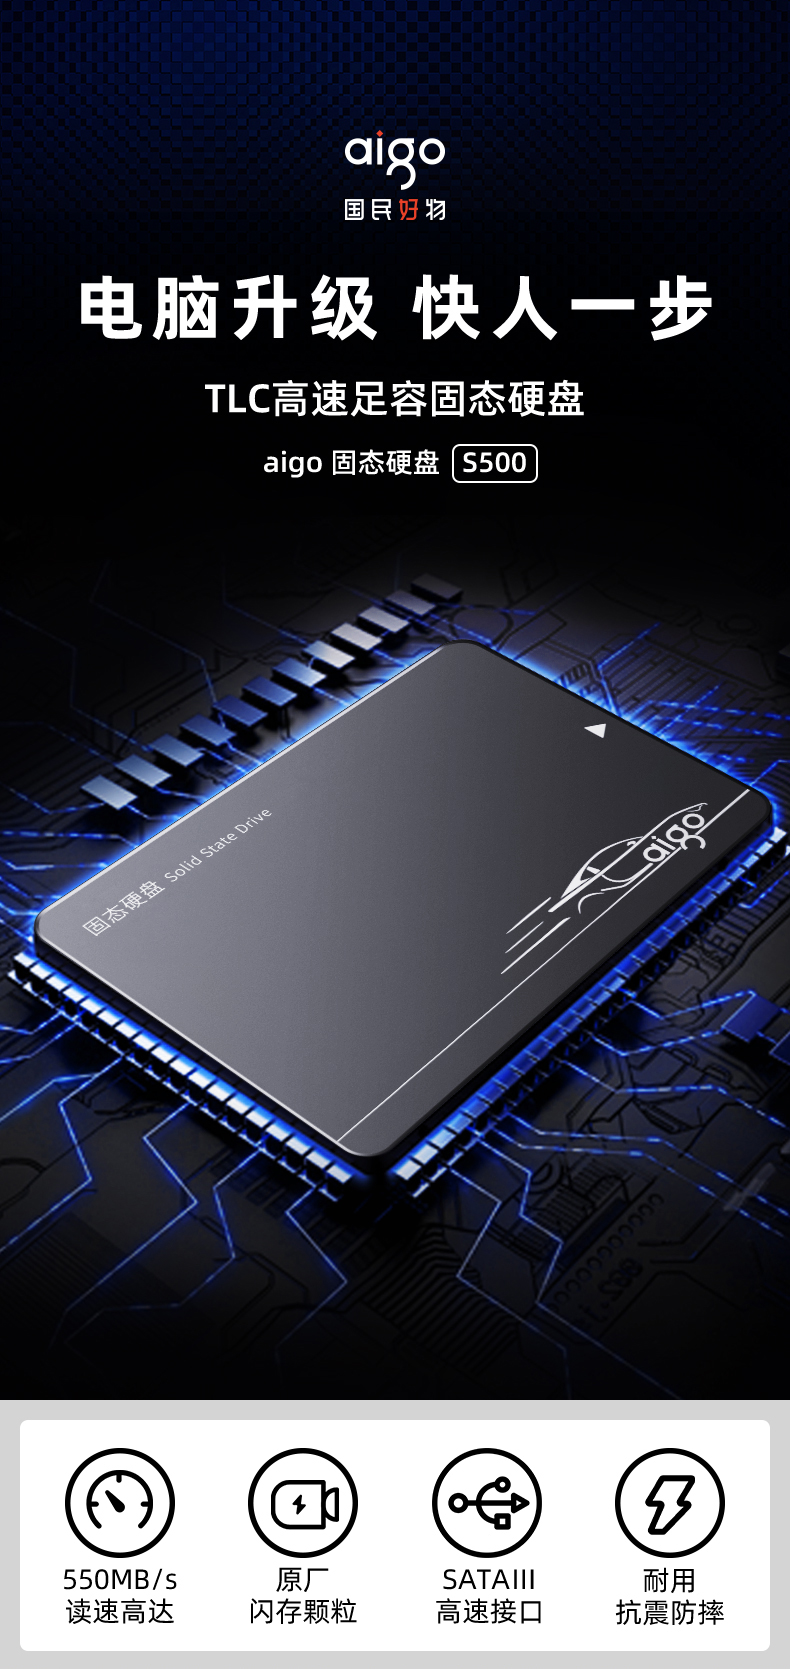 爱国者 (aigo) 512GB SSD固态硬盘 SATA3.0接口 S500 读速高达550MB/s 写速高达500MB/s